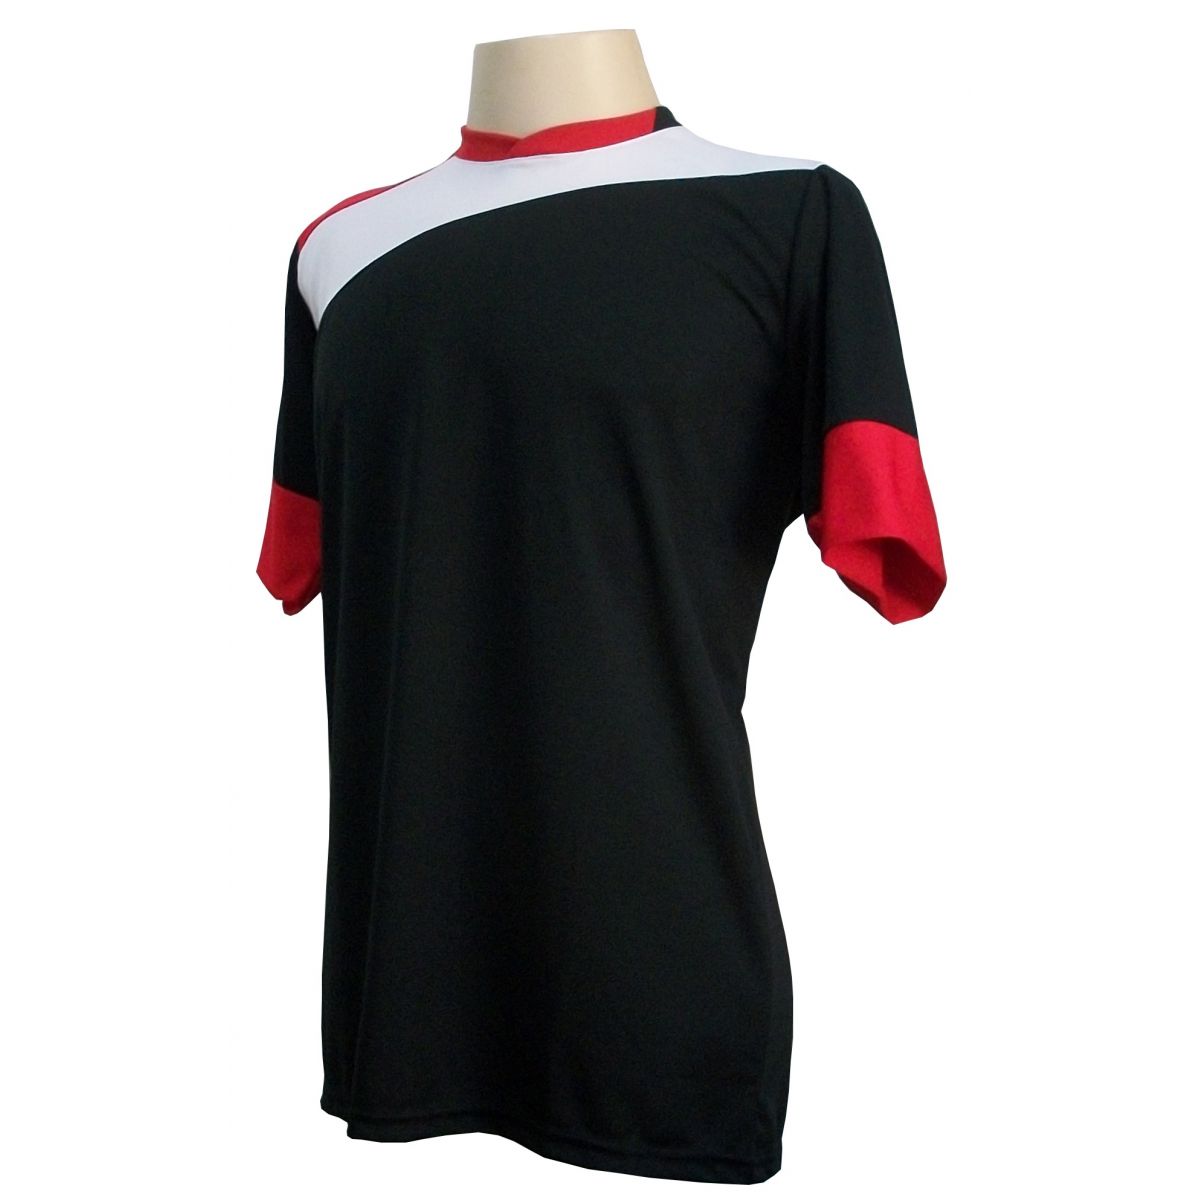 Uniforme Esportivo com 14 camisas modelo Sporting Preto/Branco/Vermelho + 14 calções modelo Copa + 1 Goleiro + Brindes